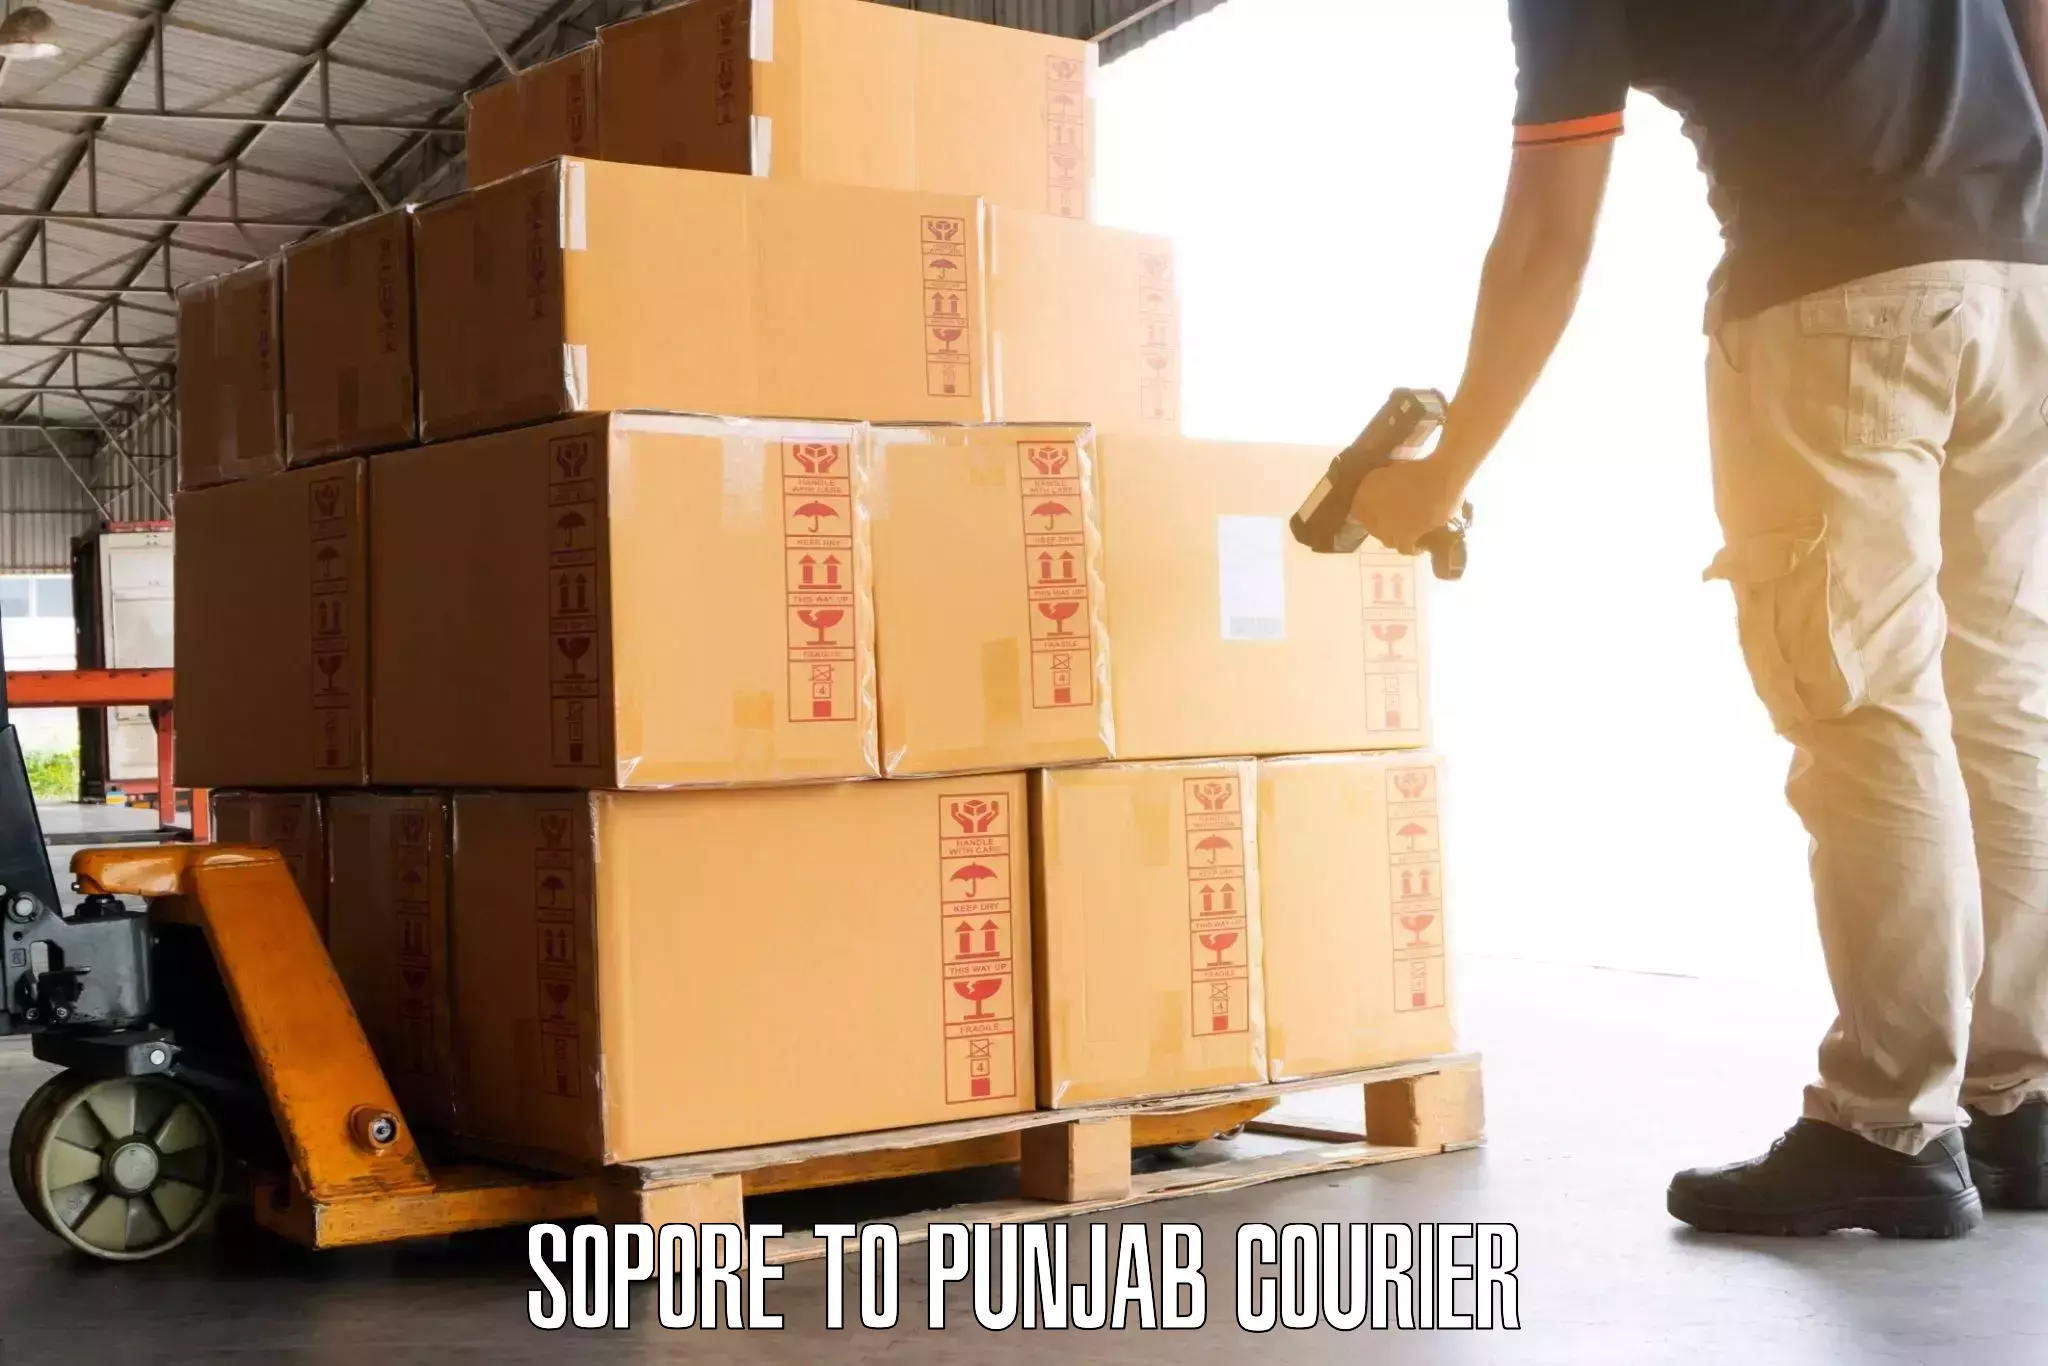 Emergency baggage service Sopore to Punjab